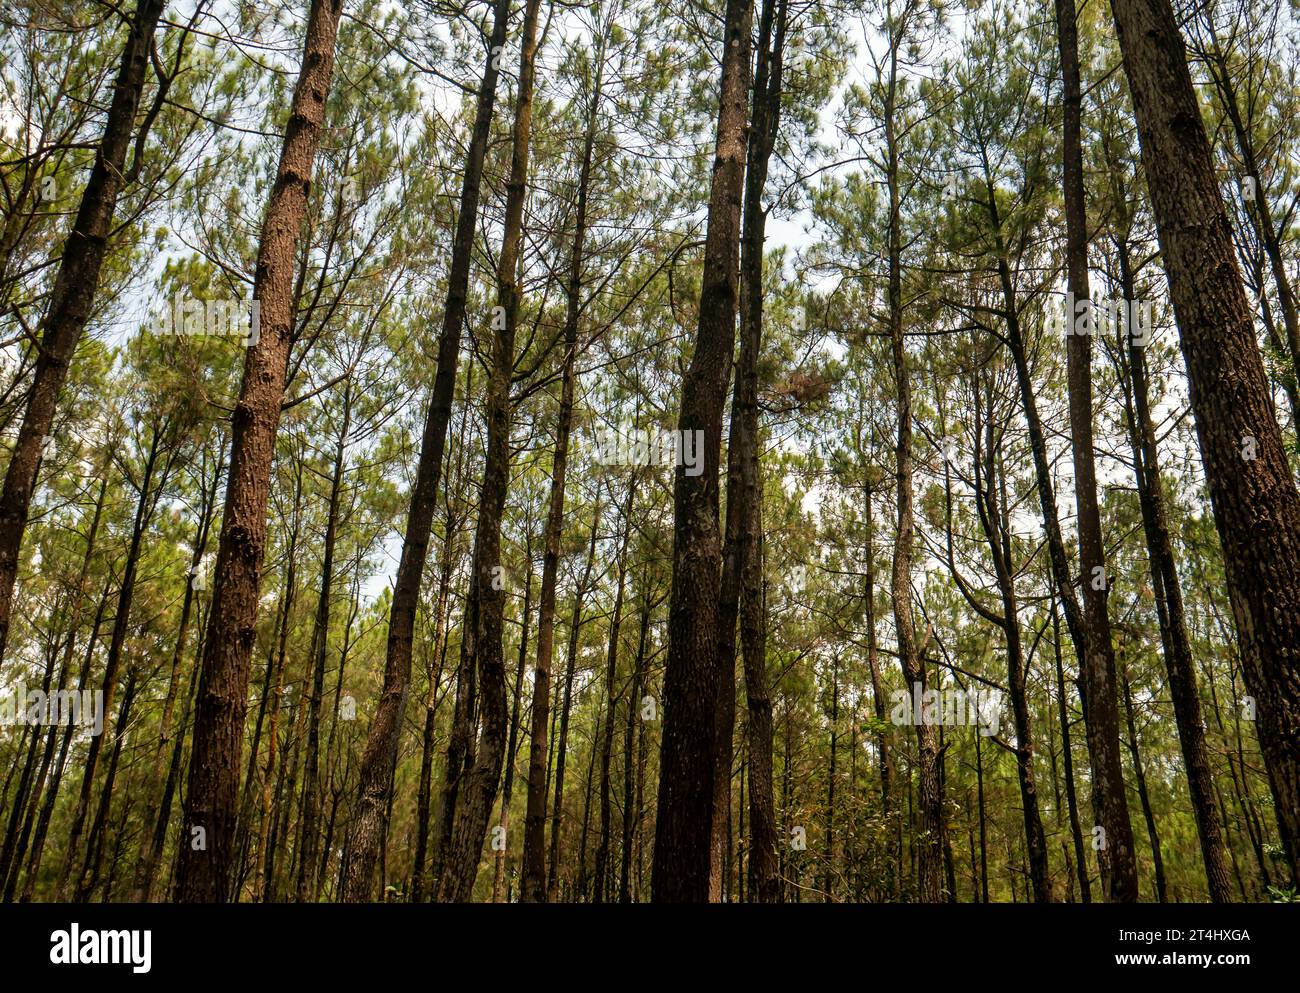 Pinus merkusii, the Merkus pine or Sumatran pine tree in the forest, natural background Stock Photo